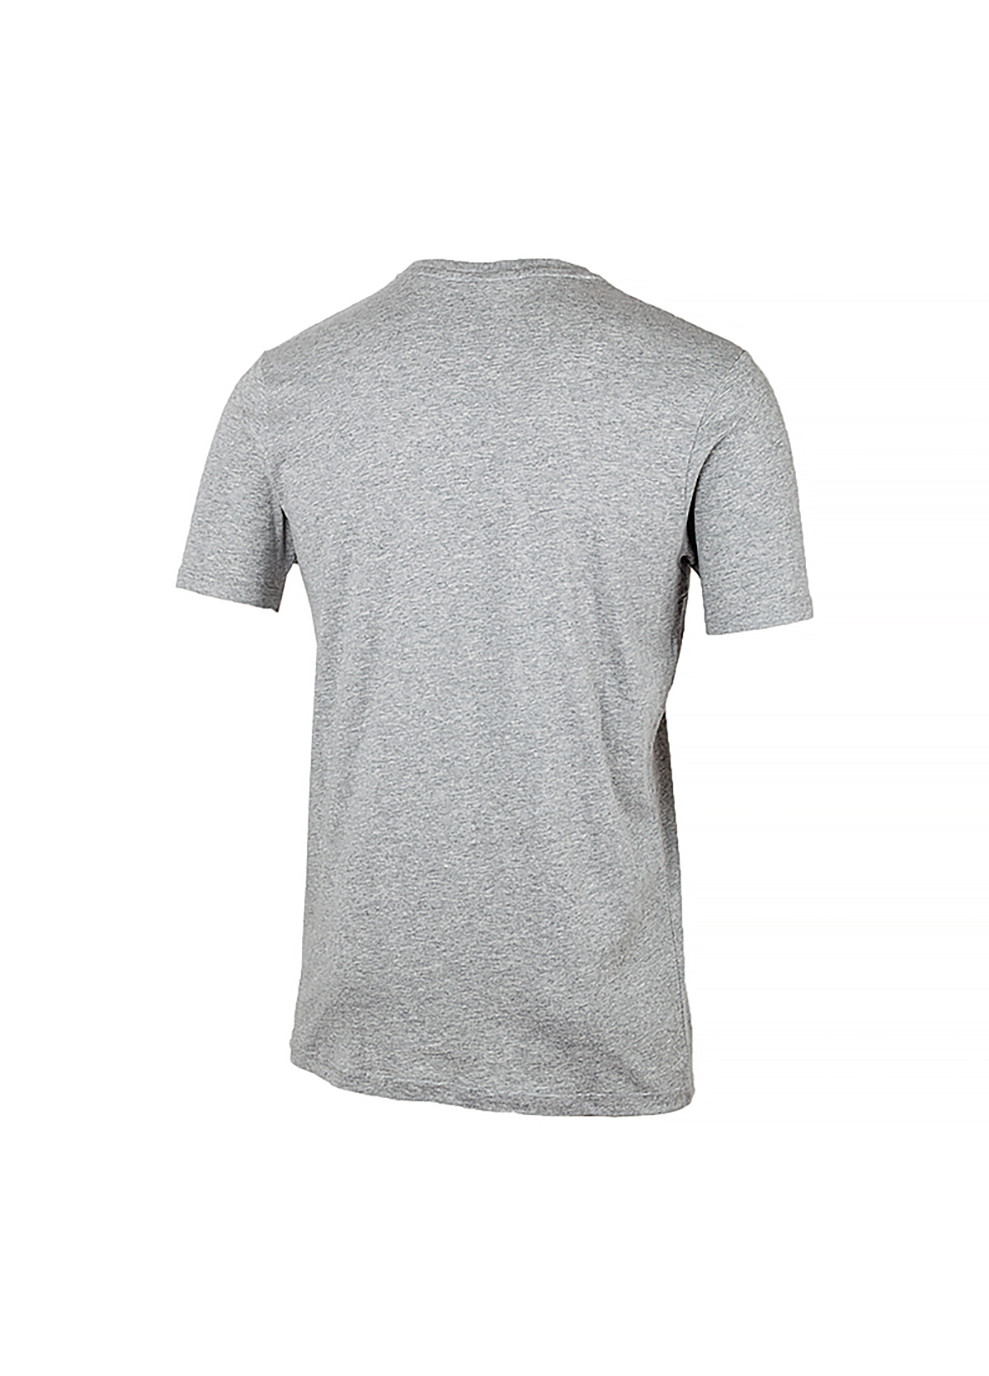 Серая мужская футболка sl prado серый s (shc07405-grey-marl s) Ellesse